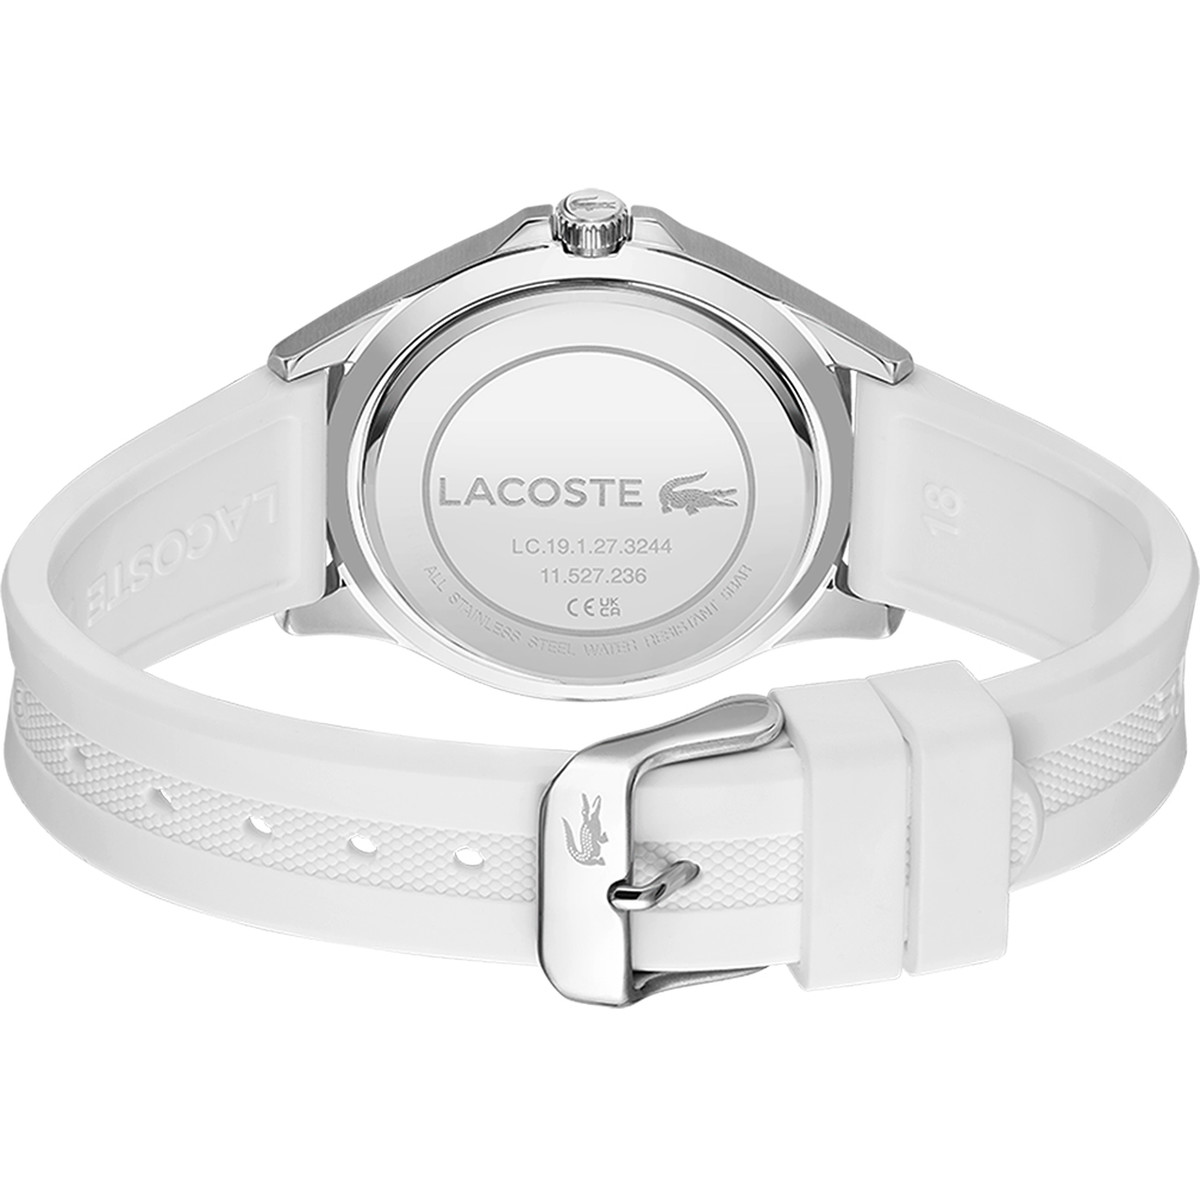 Montre Lacoste femme acier bracelet silicone blanc - vue 3